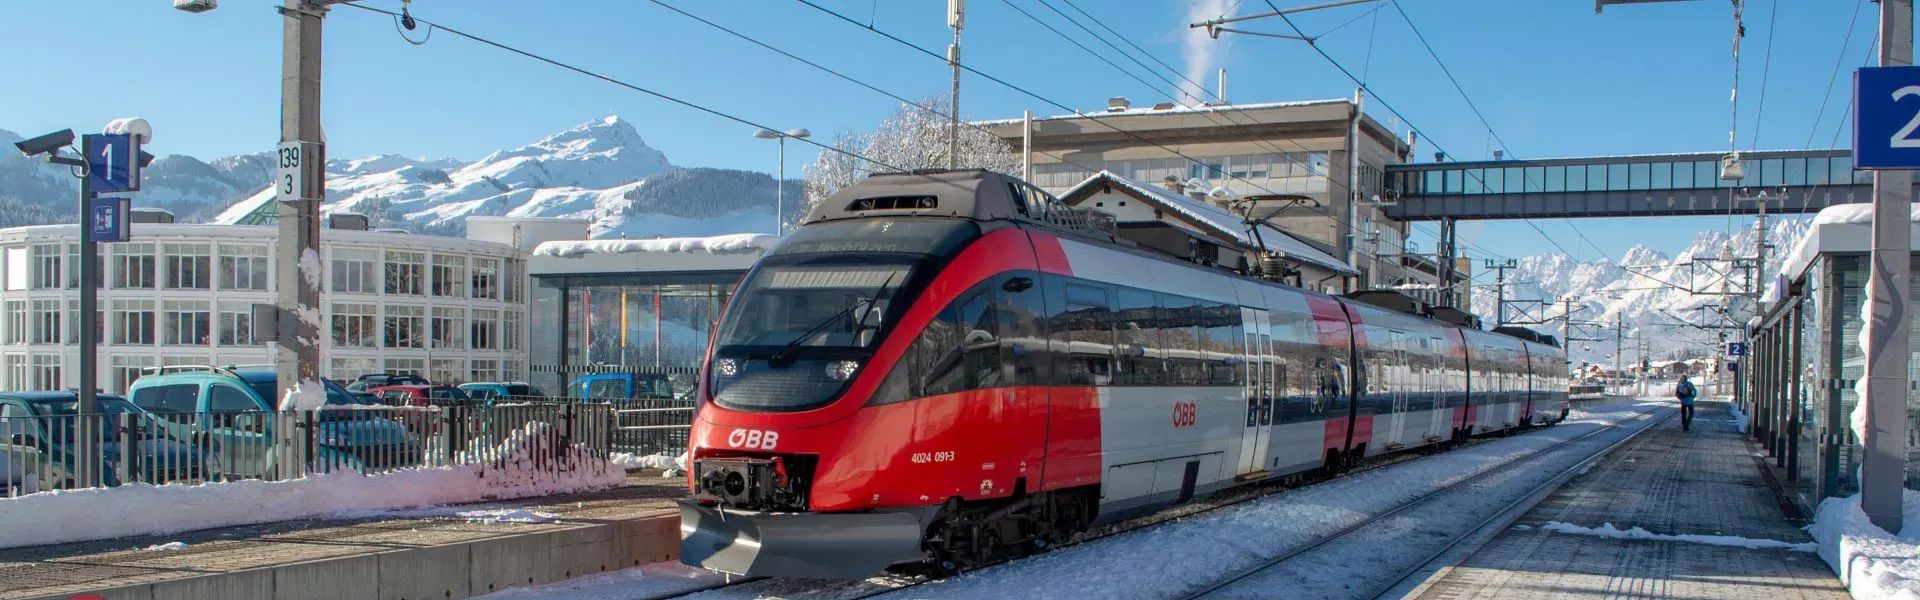 PillerseeTal - Bahn - Mobilität